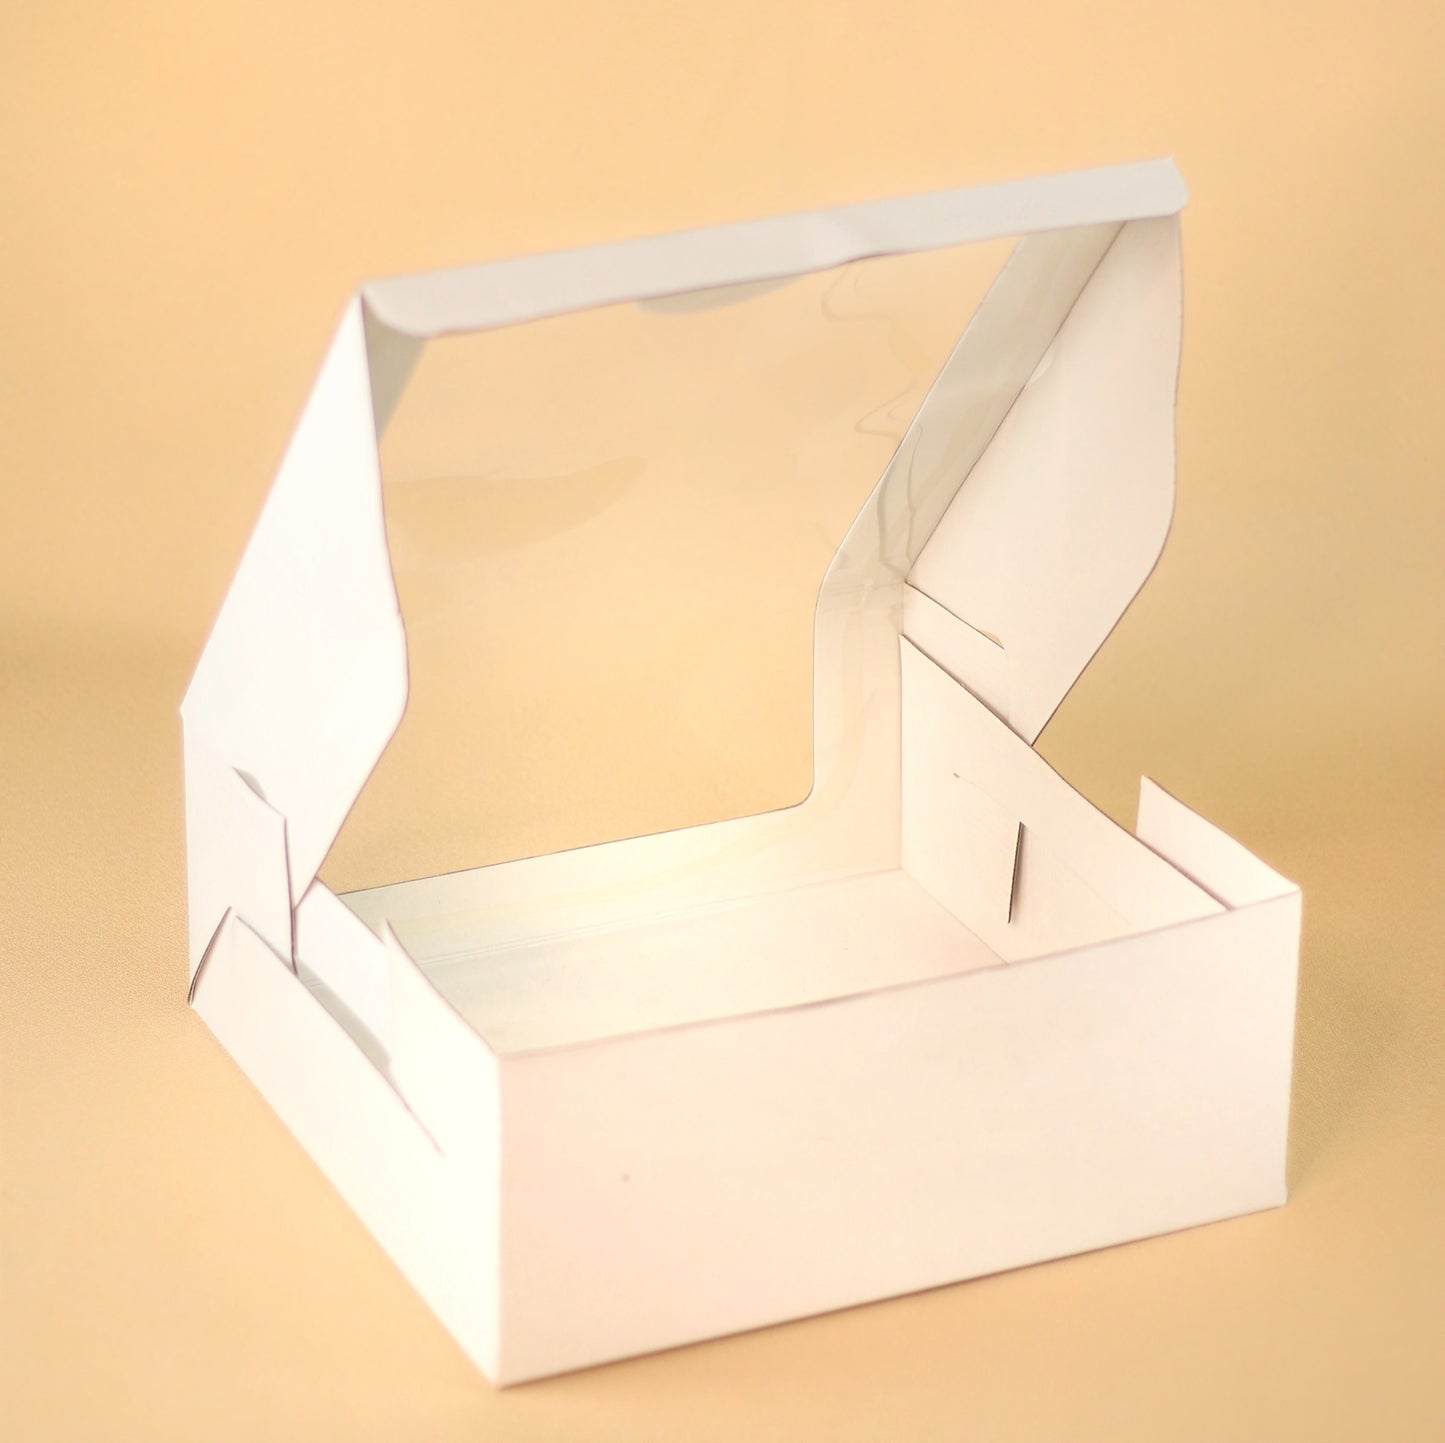 3 KG DUAL WINDOW CAKE BOX - 14 X 14 X 5 IN